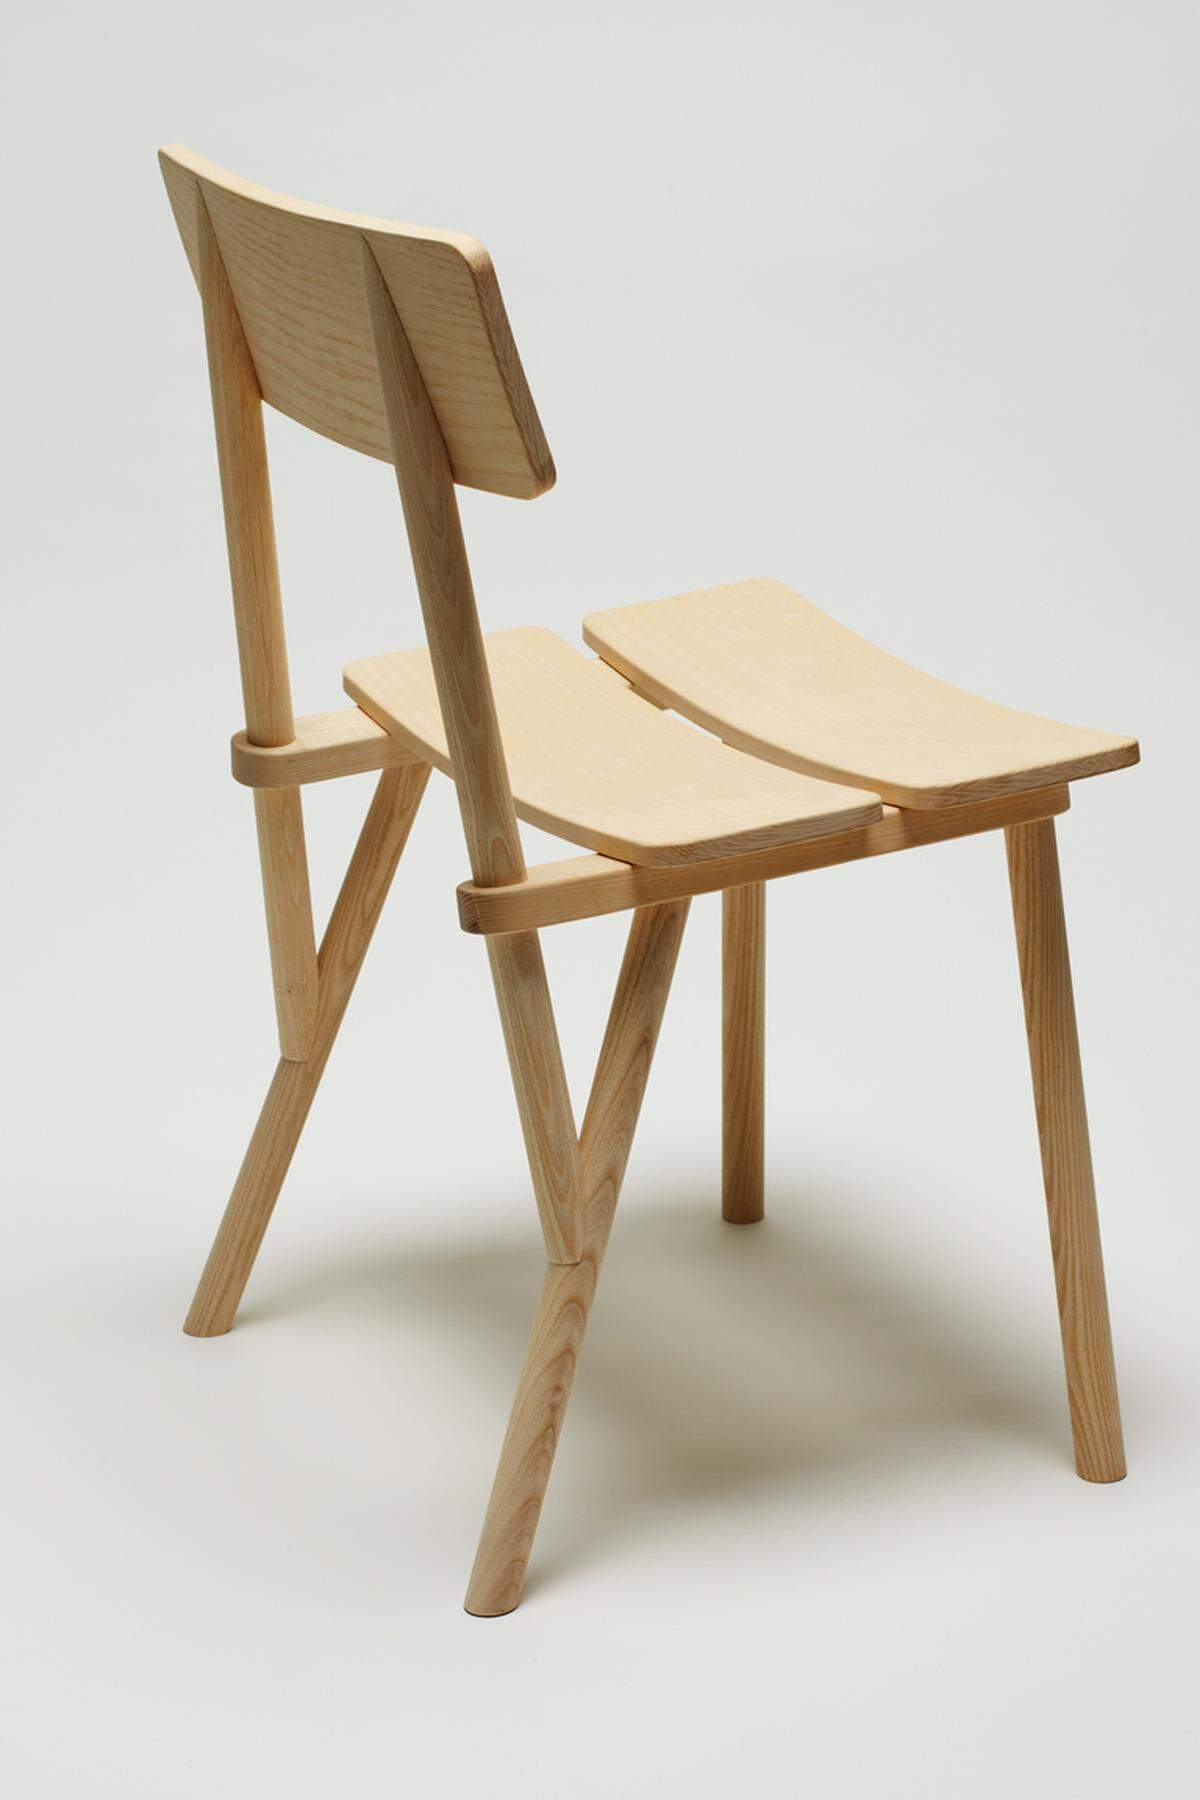 Den Stuhl „Feen“ entwarf Robert Rüf 2009 aus Eschen-Holz. Traditionelle Brettstühle mit gezapften Beinen standen dafür Pate. Rüf wollte dabei der ursprünglichen vertrauten Typologie eine leichte Anmutung verleihen.